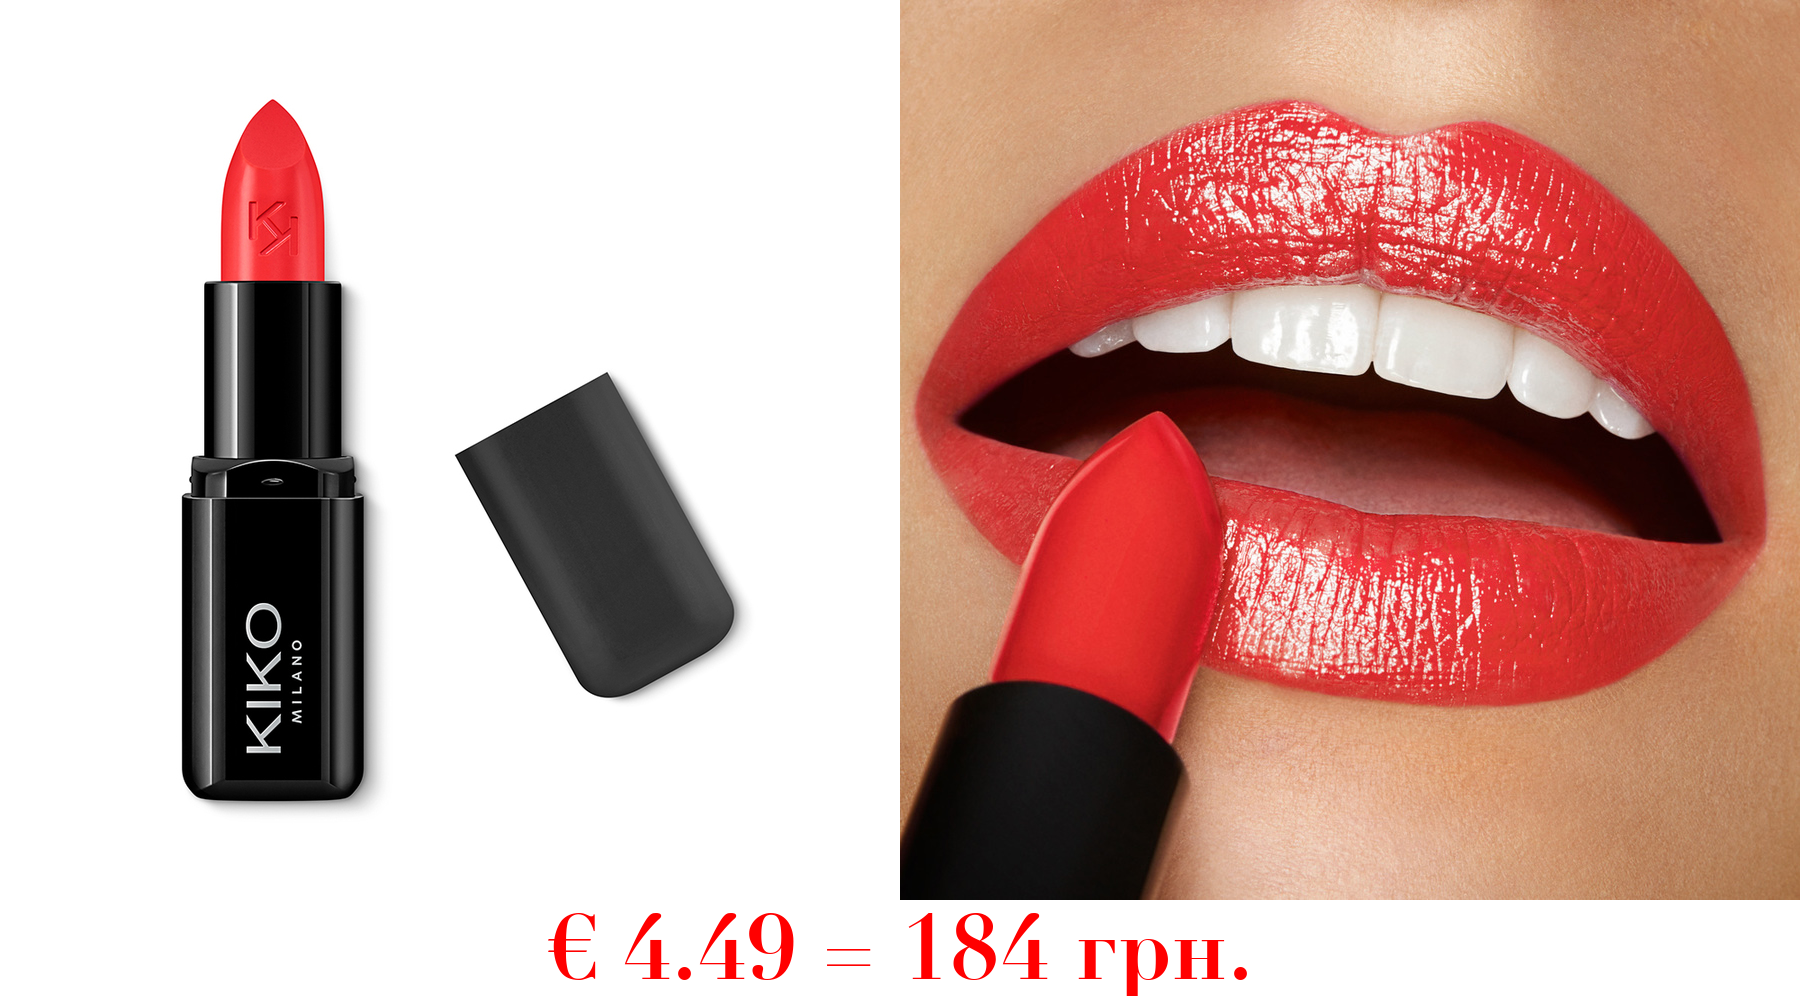 smart fusion lipstickReichhaltiger, nährstoffspendender Lippenstift mit strahlendem Finish